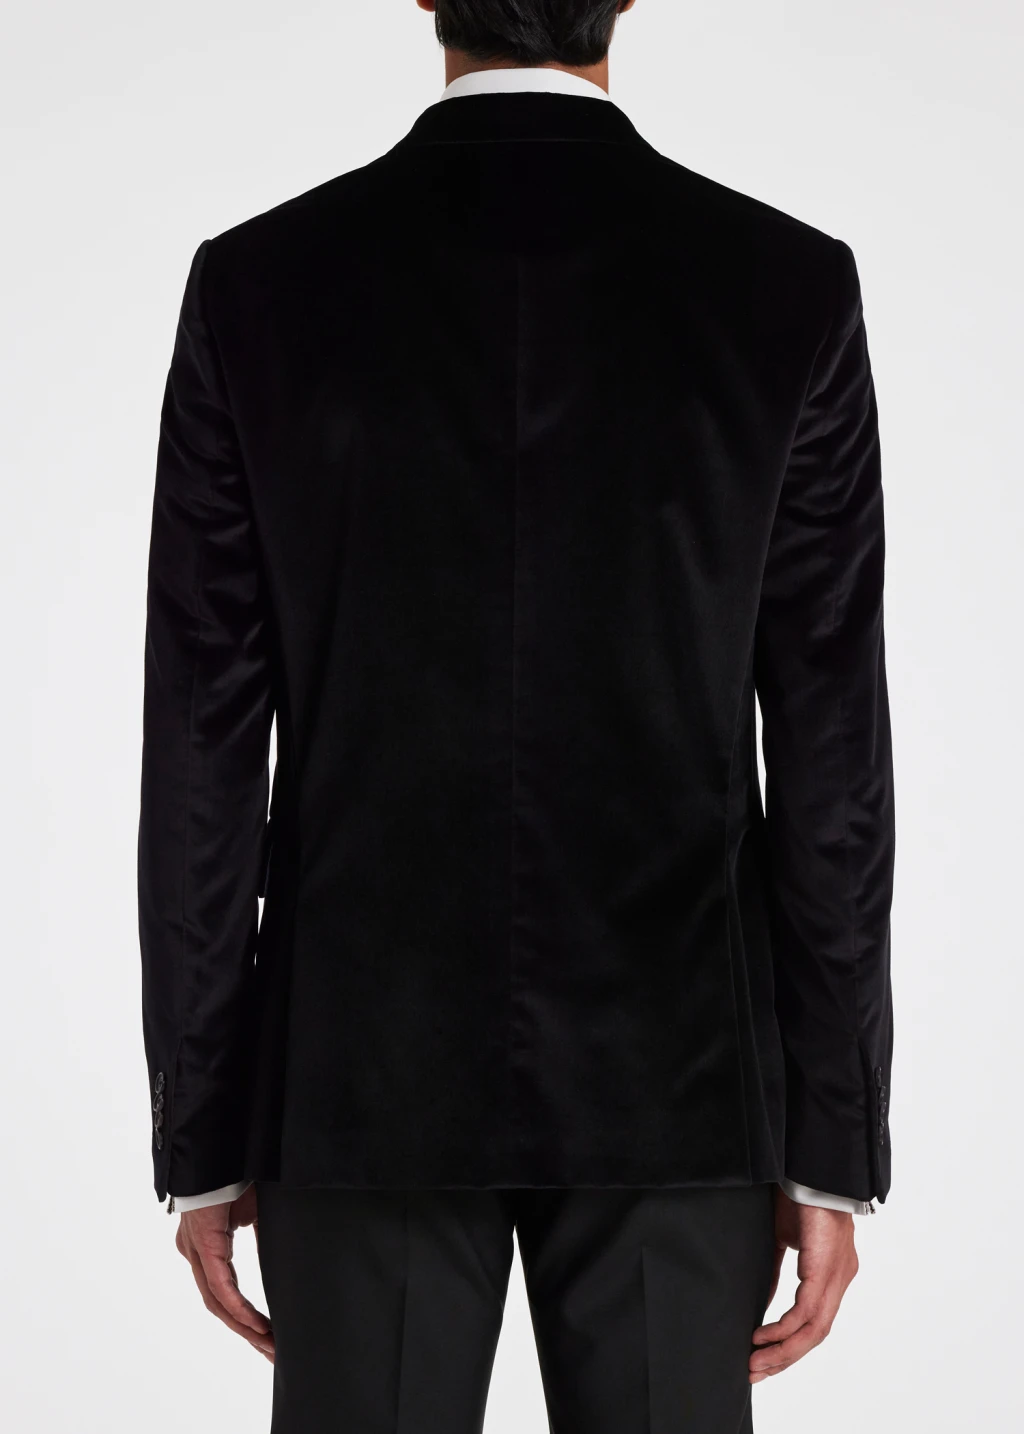 Men's Slim-Fit Black Velvet Two-Button Blazer